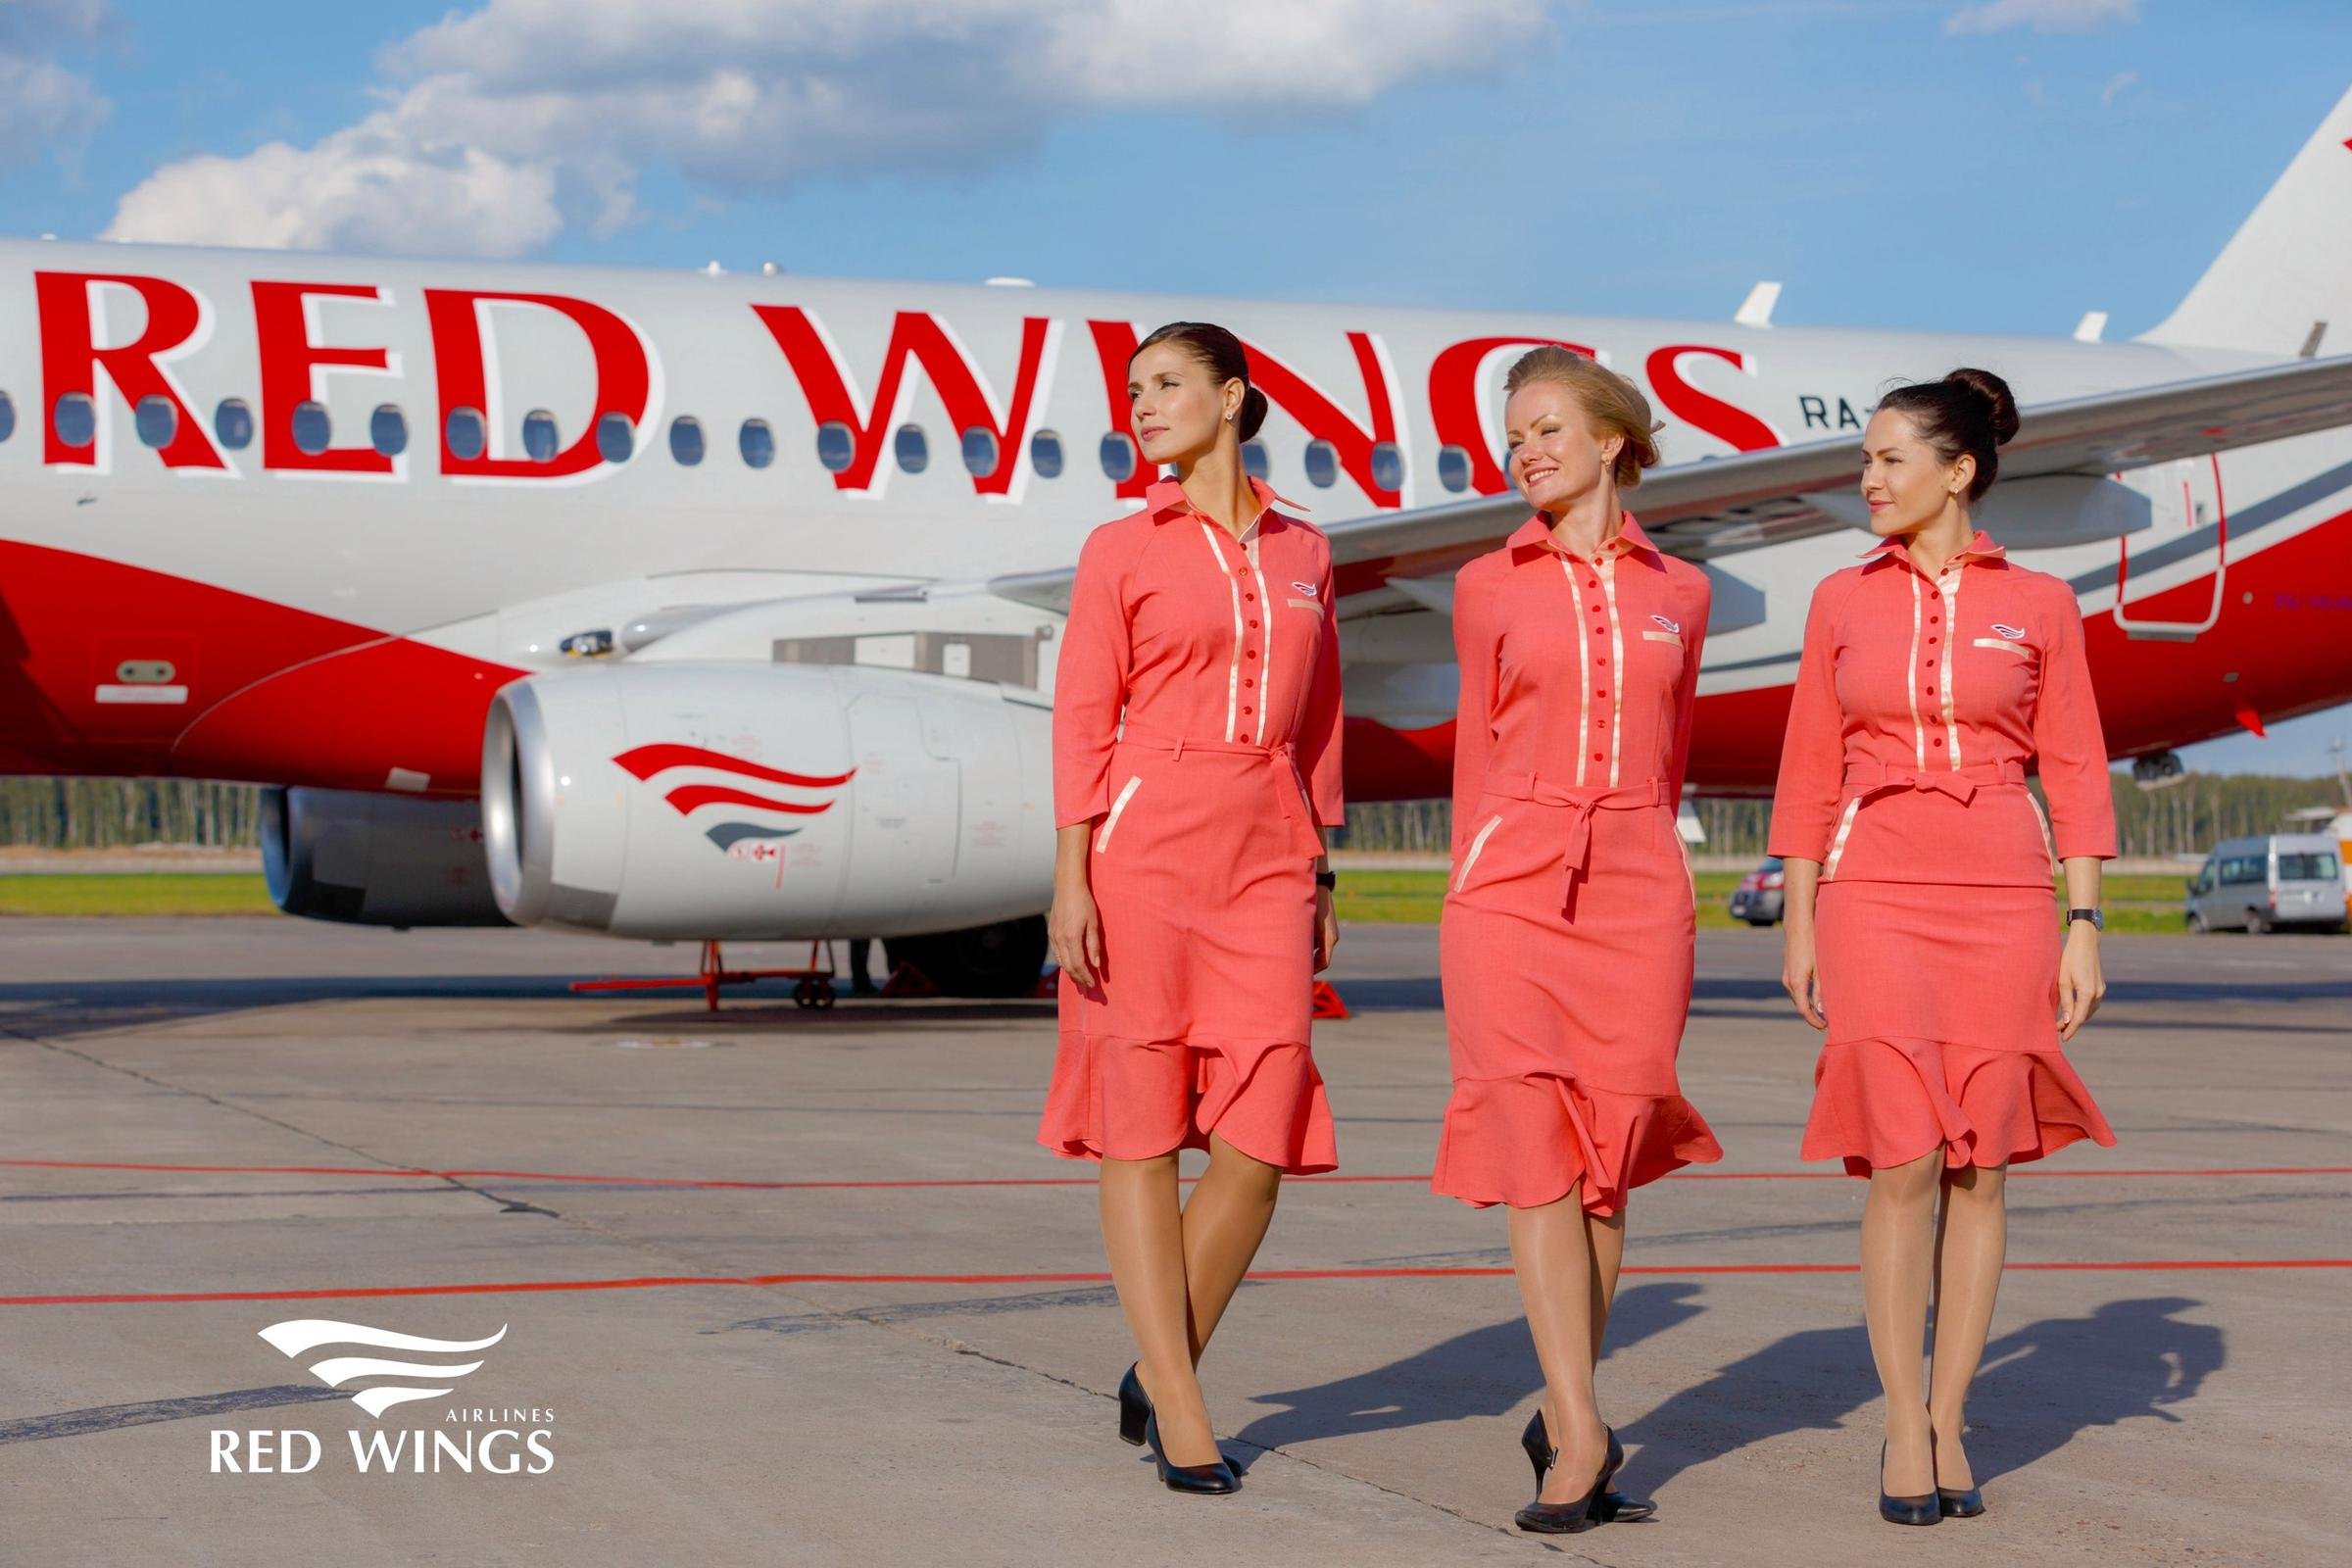 Компания red wings. Форма авиакомпании ред Вингс. Red Wings Airlines авиакомпания. Ред Вингс самолеты авиакомпании. Red Wings Airlines стюардессы.